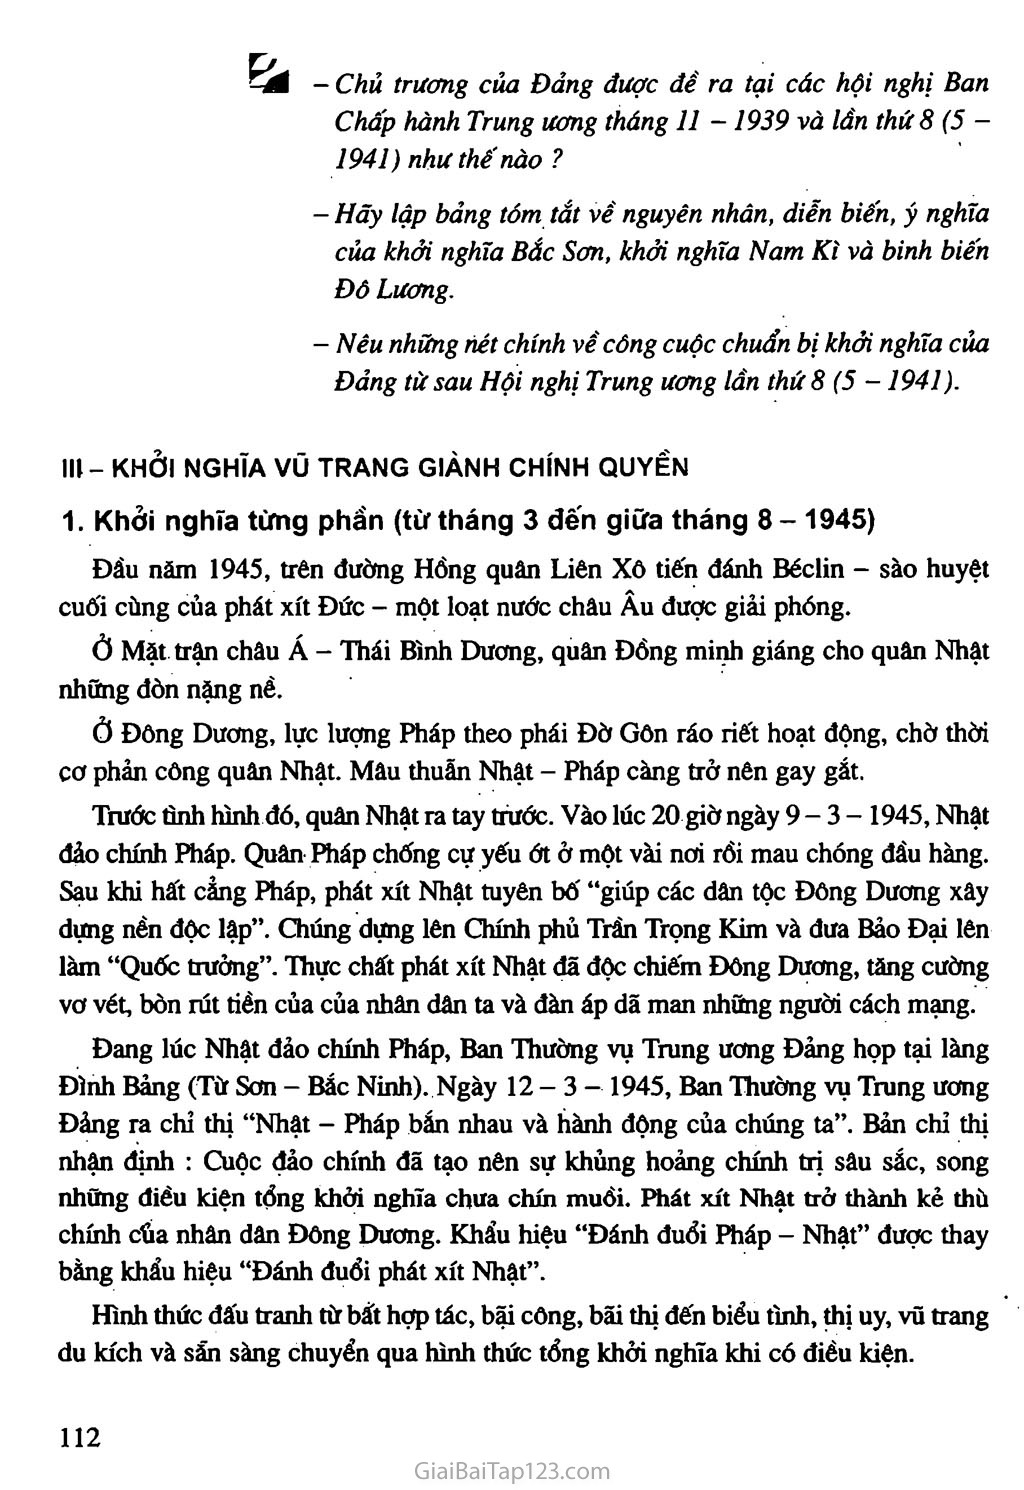 Bài 16. Phong trào giải phóng dân tộc và Tổng khởi nghĩa tháng Tám (1939 - 1945). Nước Việt Nam Dân chủ Cộng hoà ra đời trang 11